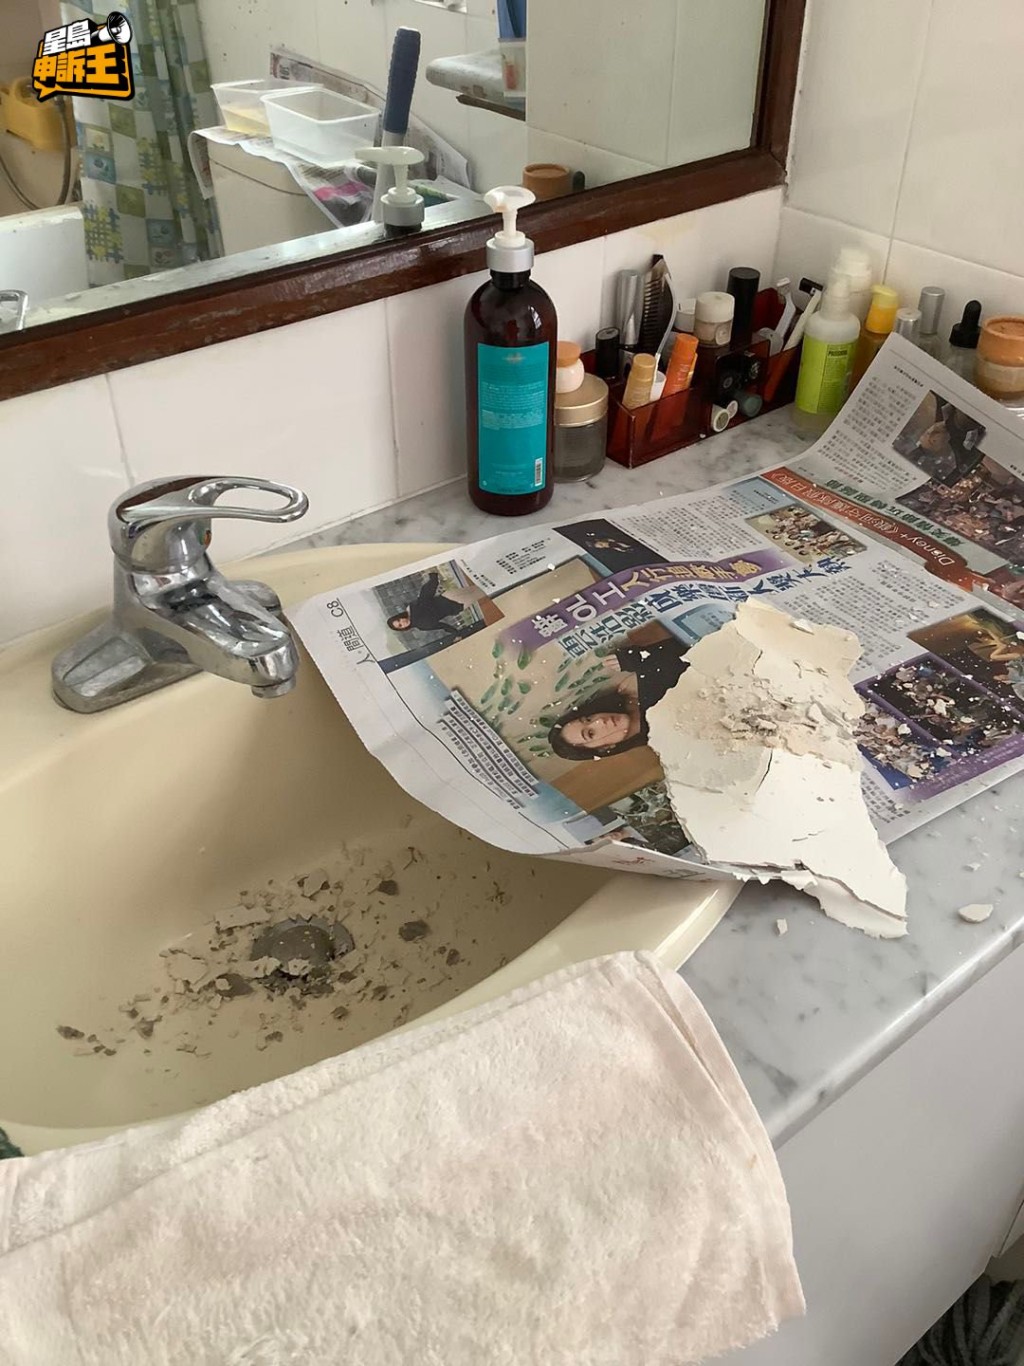 天花油漆及批荡大幅剥落，跌到洗手盘和地下。(被访者提供相片)